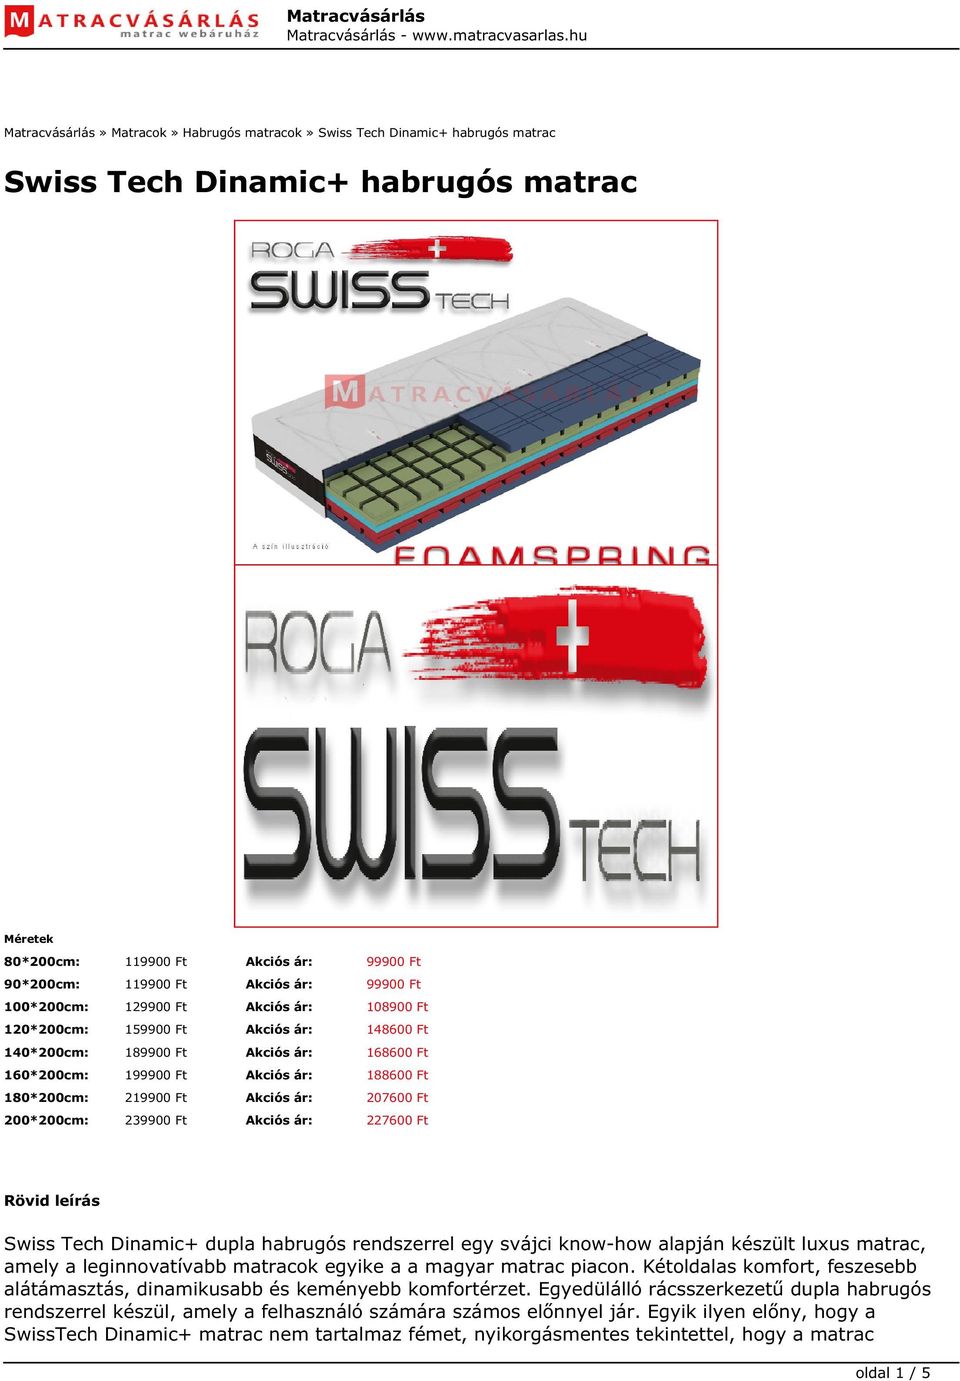 Akciós ár: 207600 Ft 200*200cm: 239900 Ft Akciós ár: 227600 Ft Rövid leírás Swiss Tech Dinamic+ dupla habrugós rendszerrel egy svájci know-how alapján készült luxus matrac, amely a leginnovatívabb